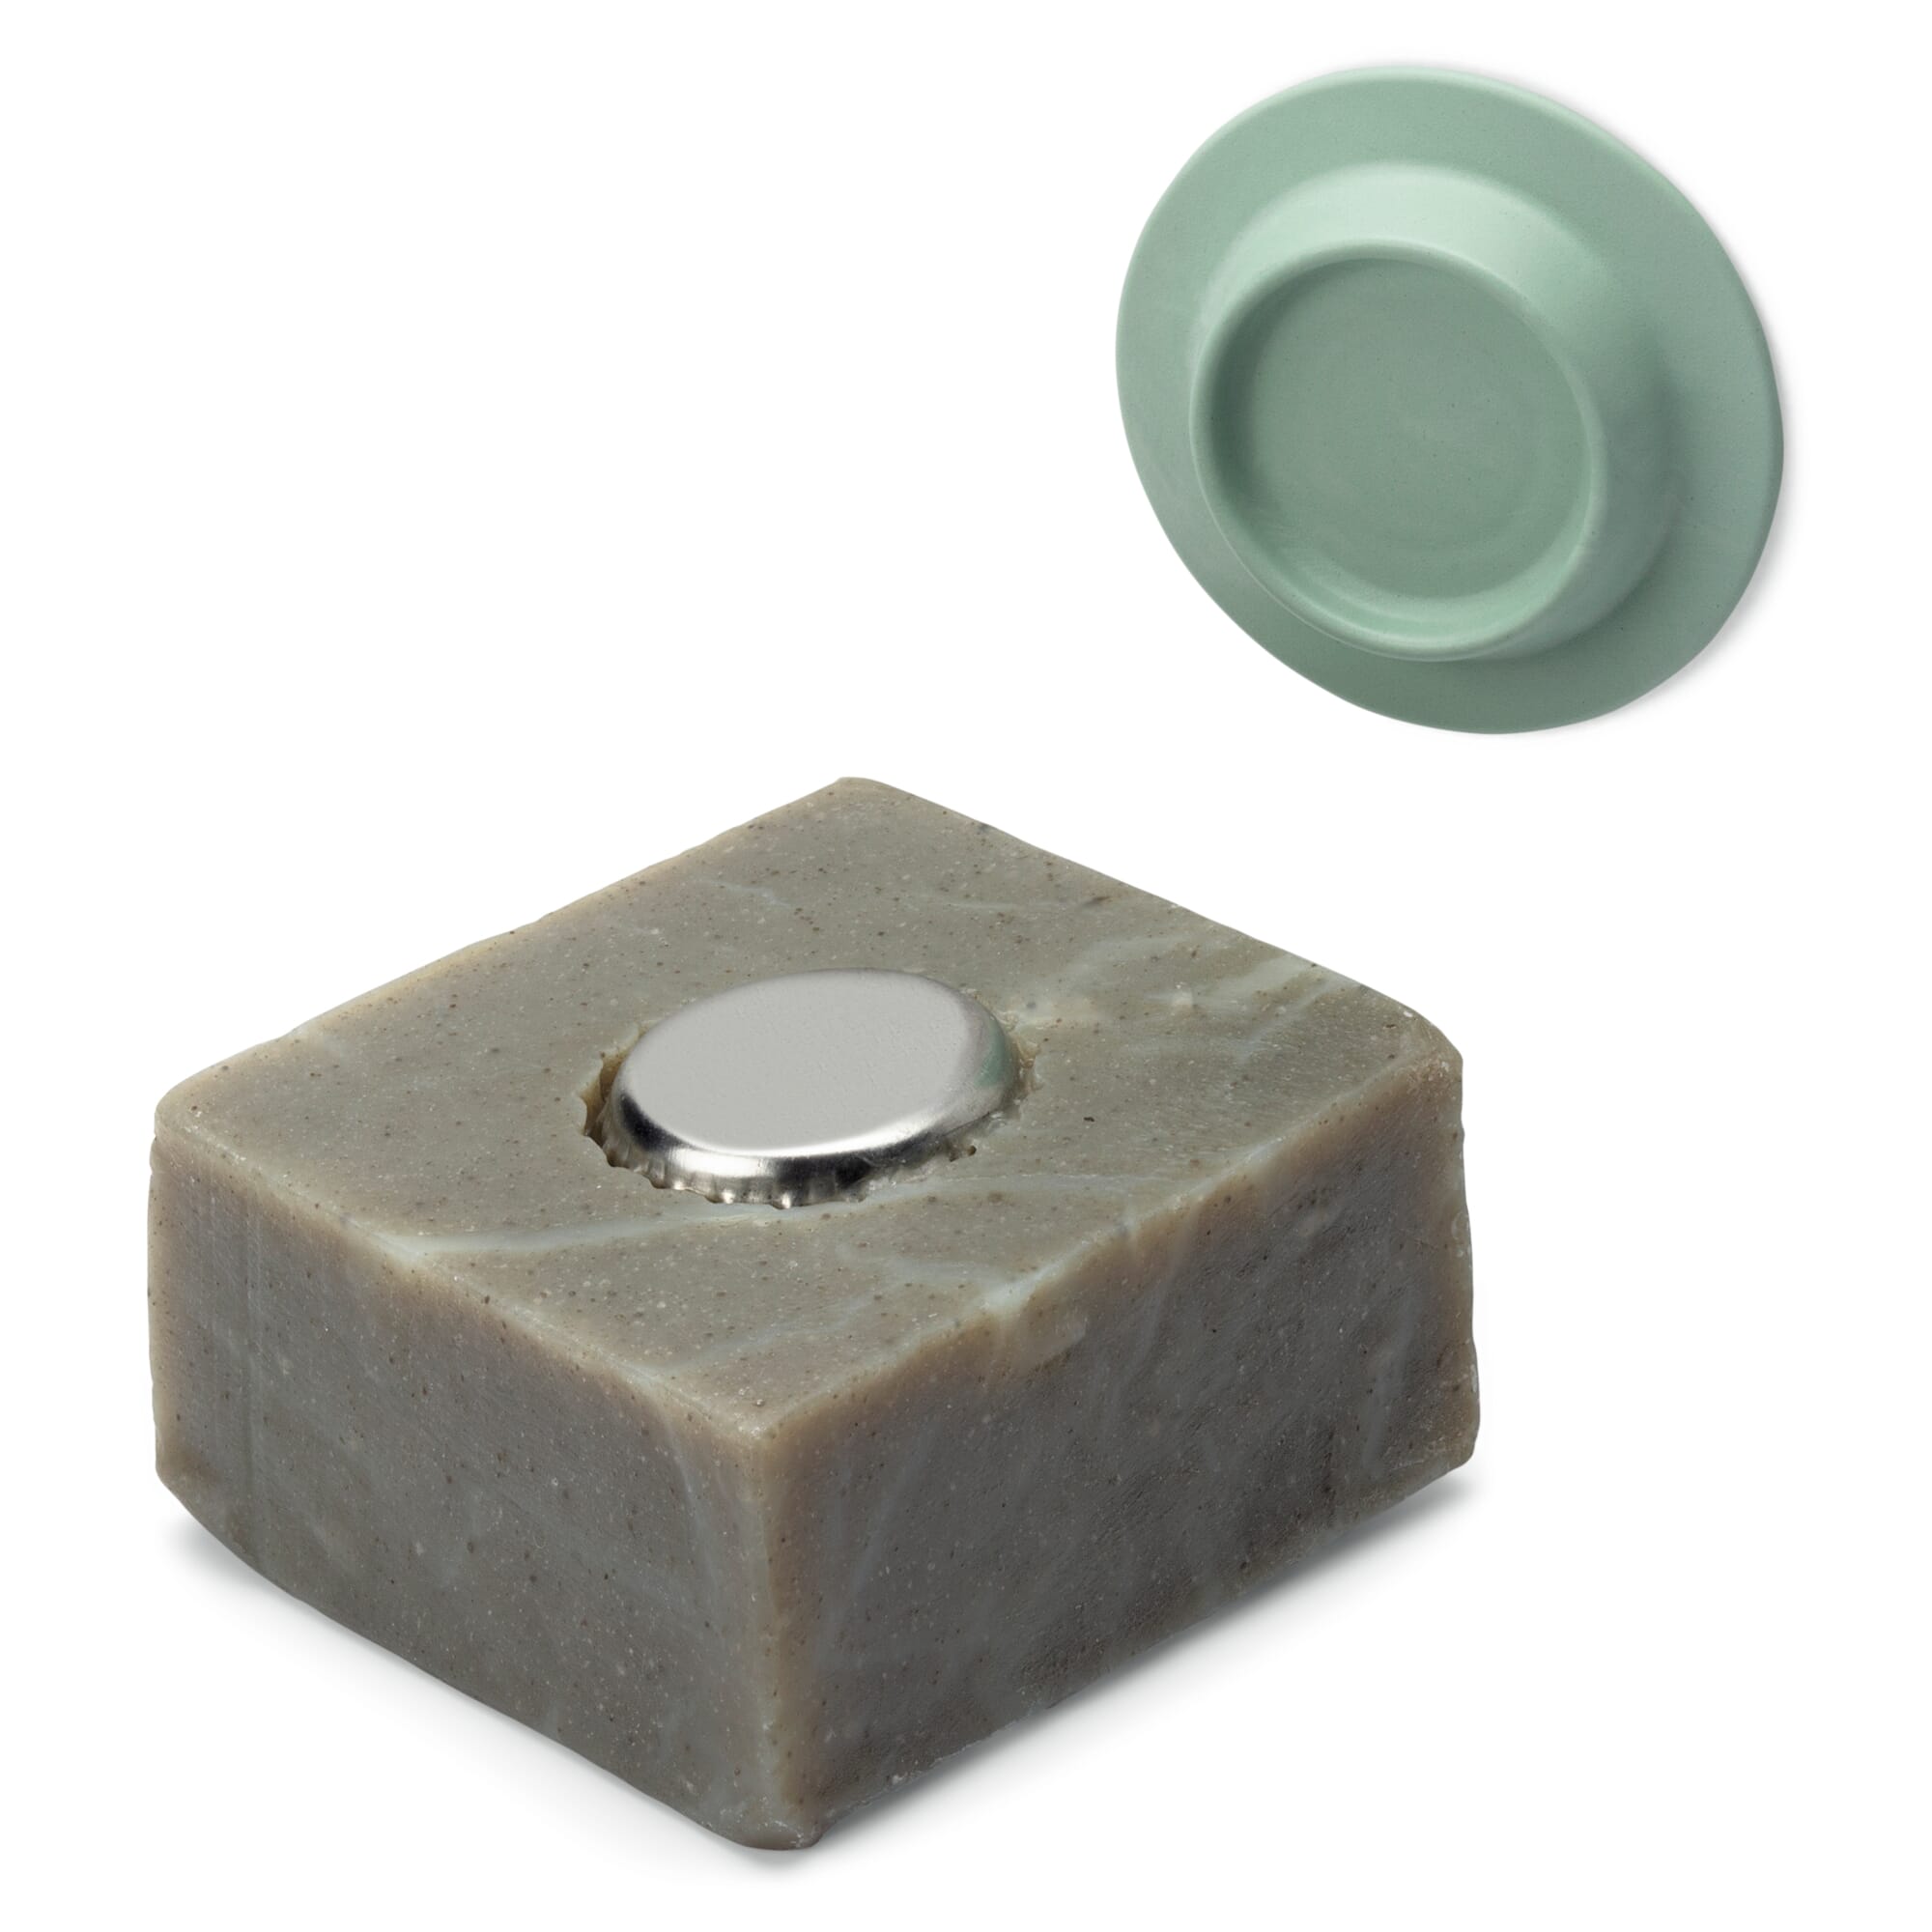 Savont Magnetic Soap Holder